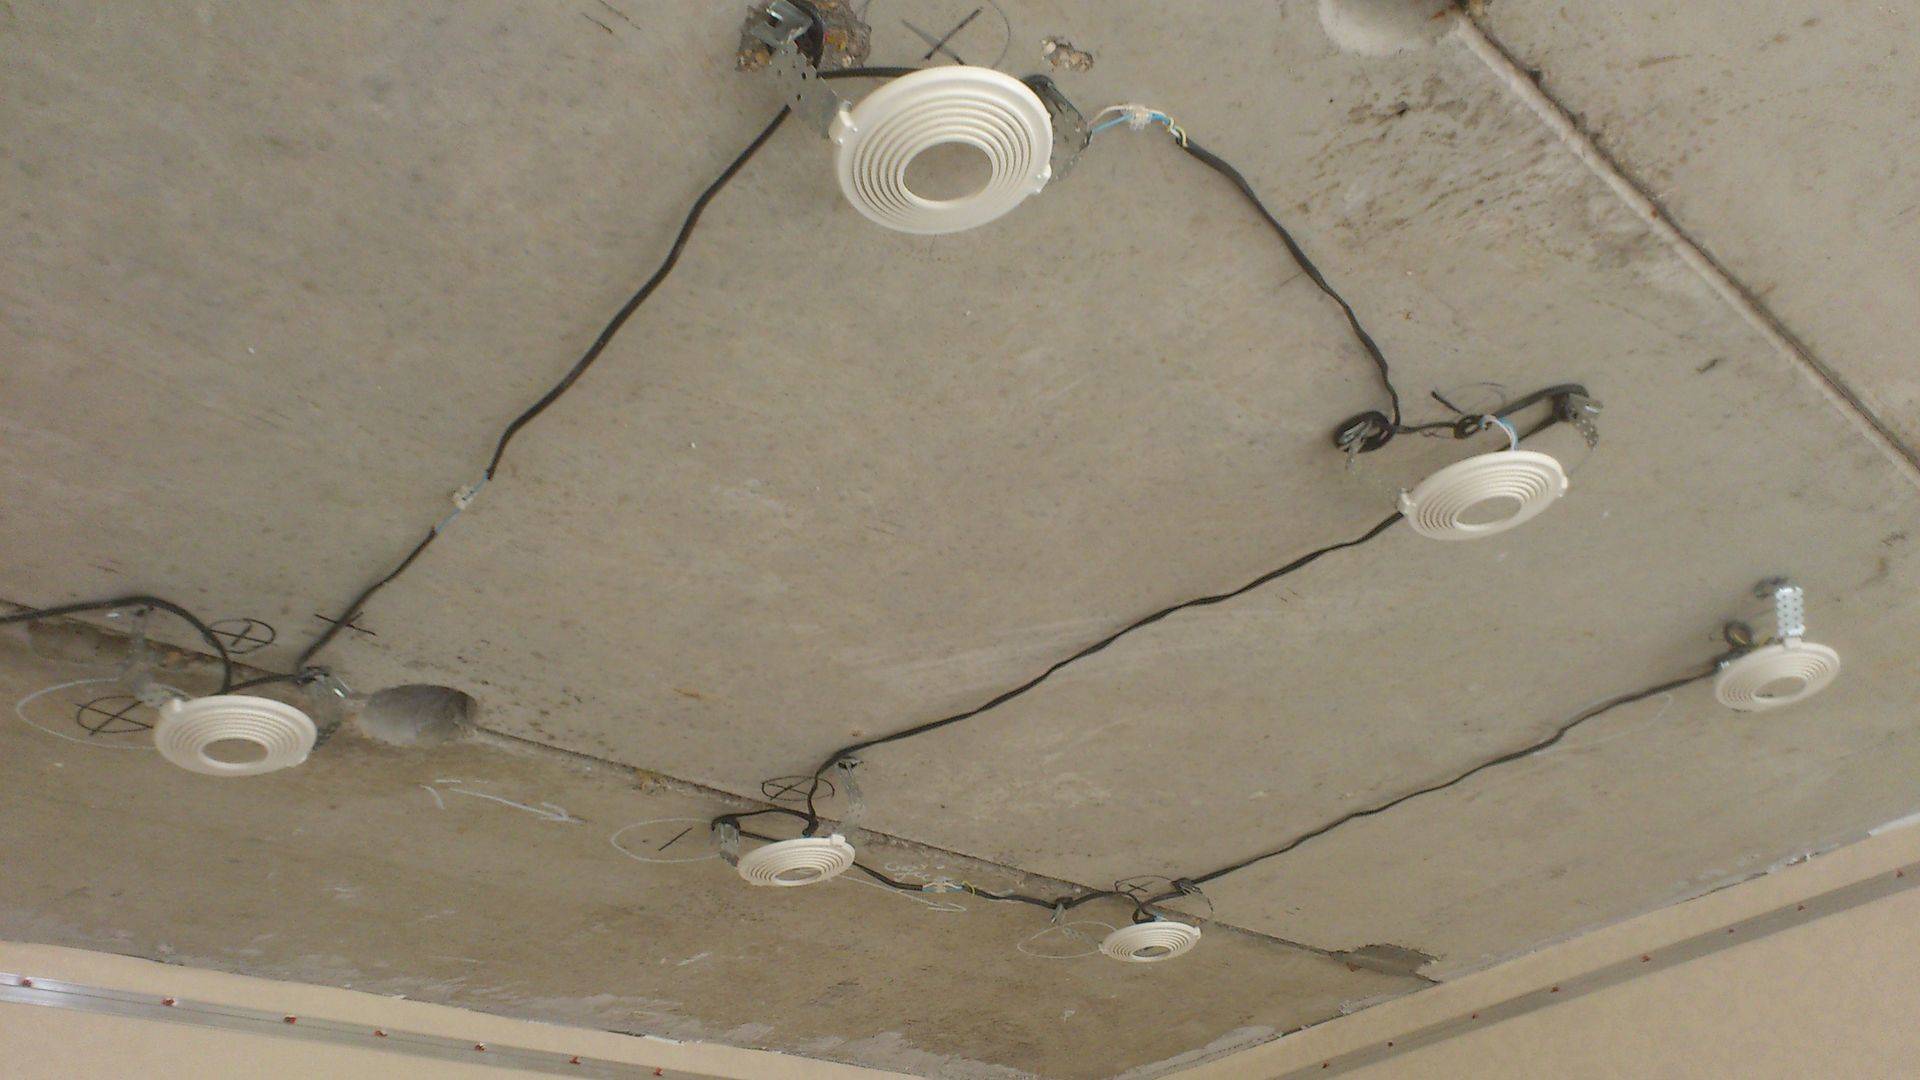 Как повесить люстру на натяжной потолок - пошаговая инструкция для правильного монтажа